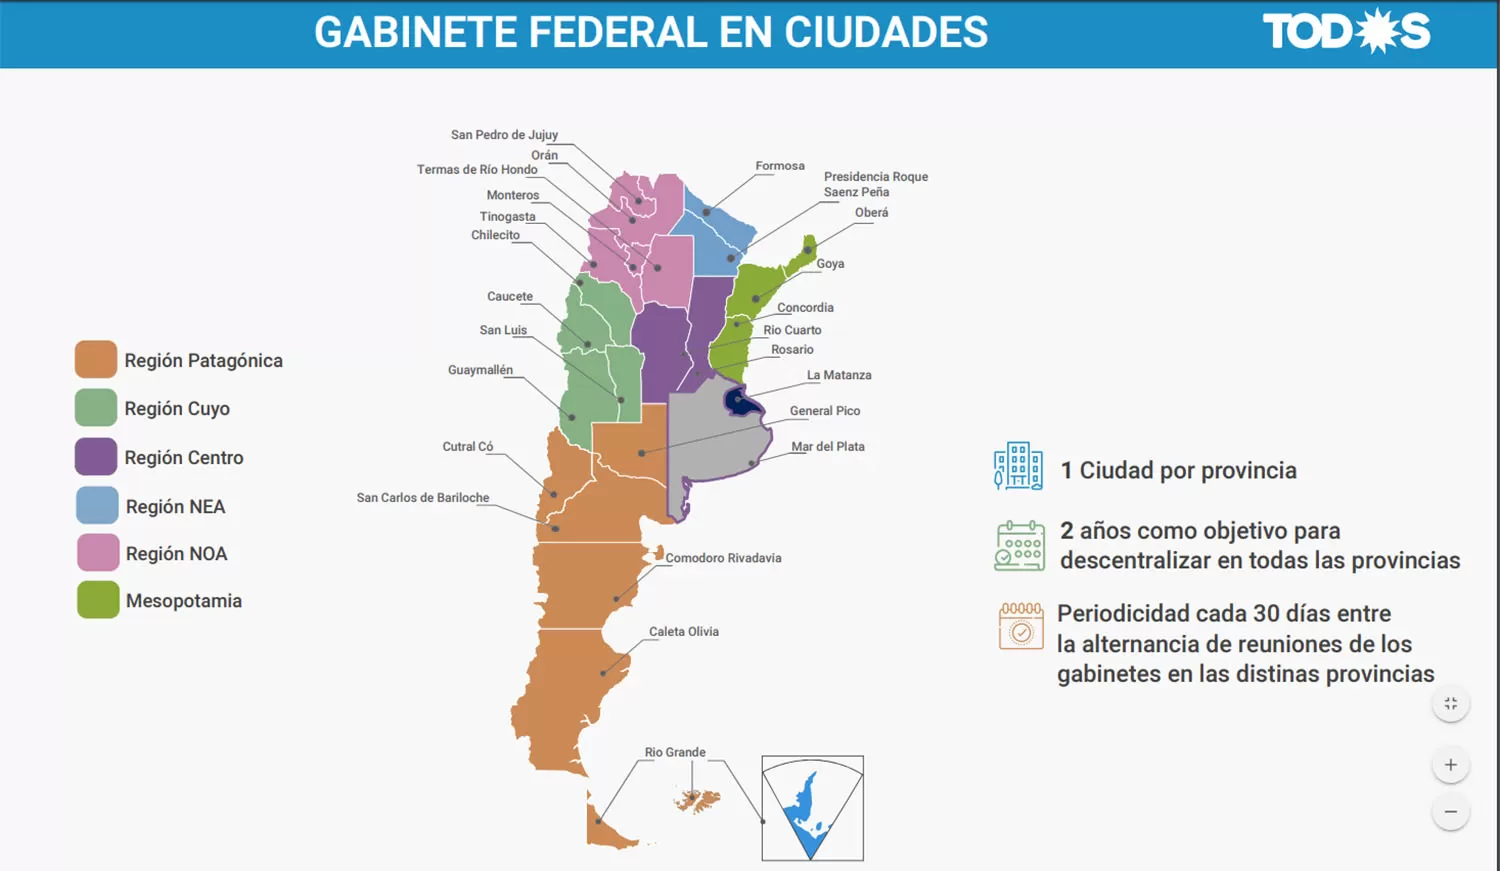 Monteros es la ciudad que eligió Alberto Fernández en su programa Democracia federal